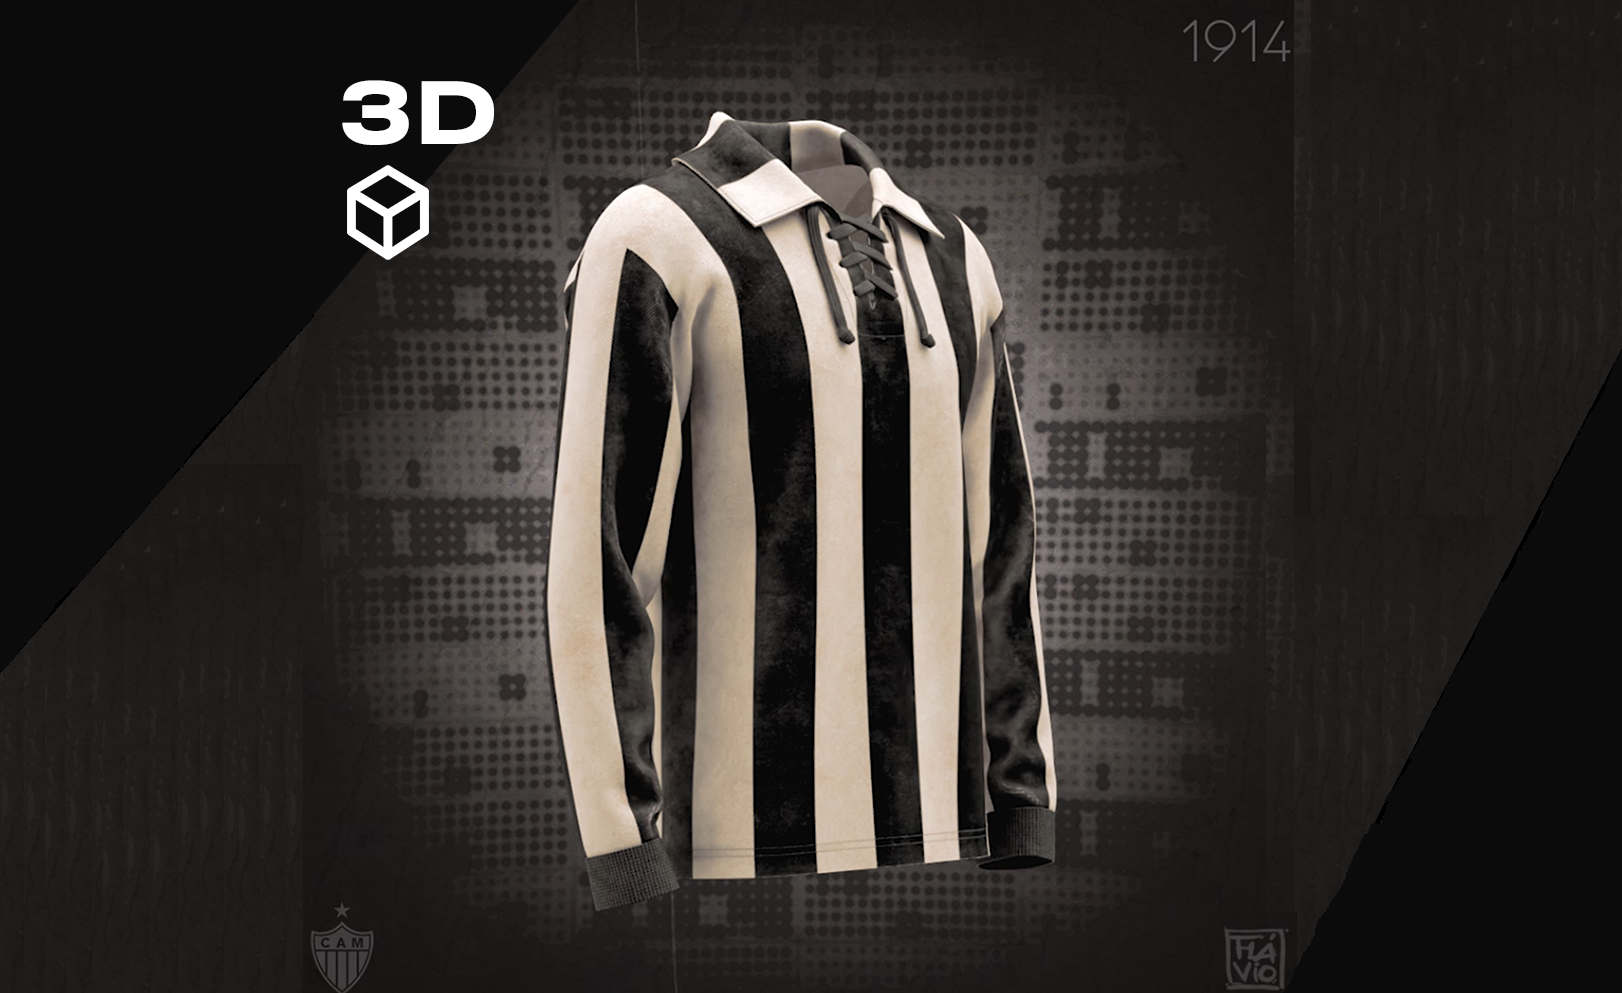 Ilustração 3D - foto divulgação: Atlético-MG